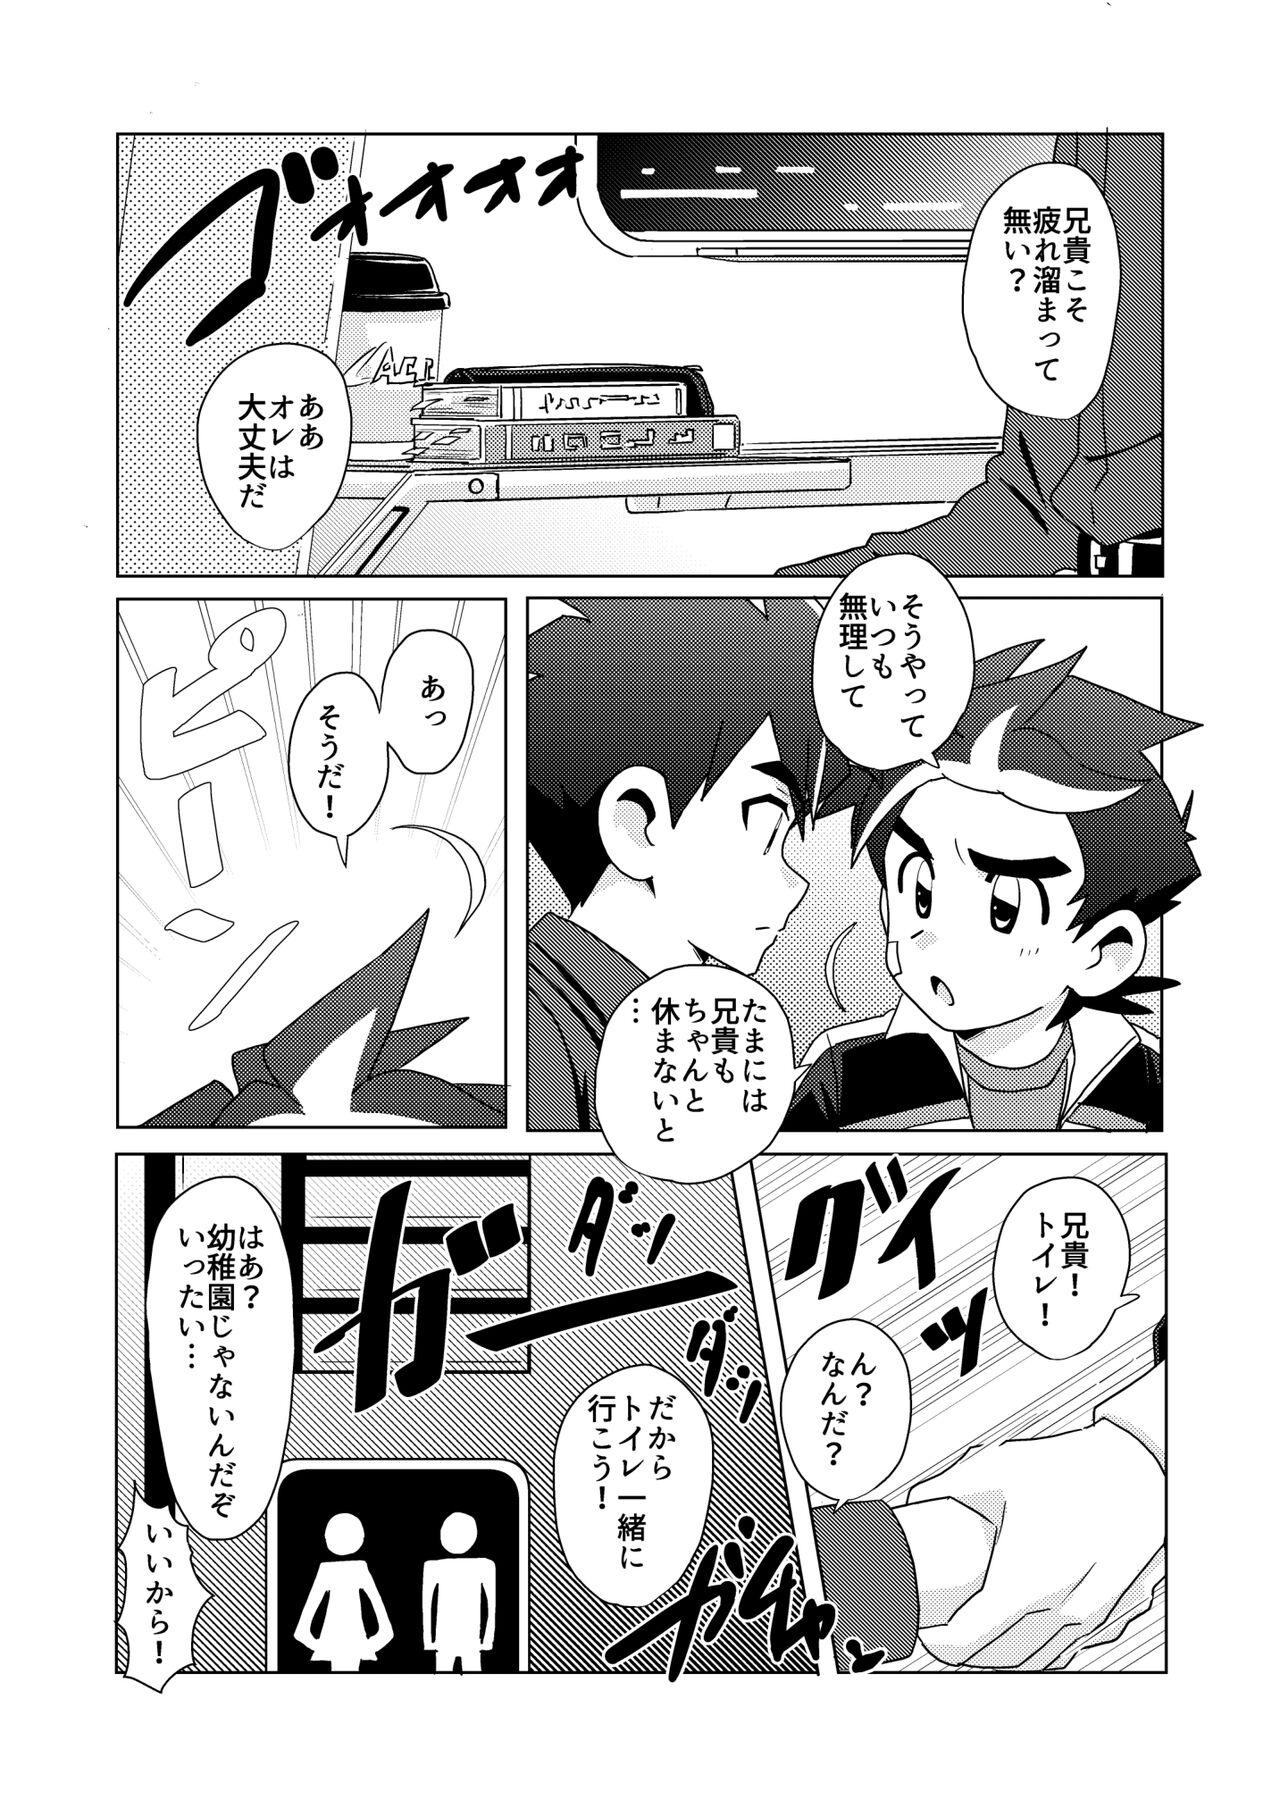 Real DRAGON BROTHERS - Shinkansen henkei robo shinkalion 18yearsold - Page 5